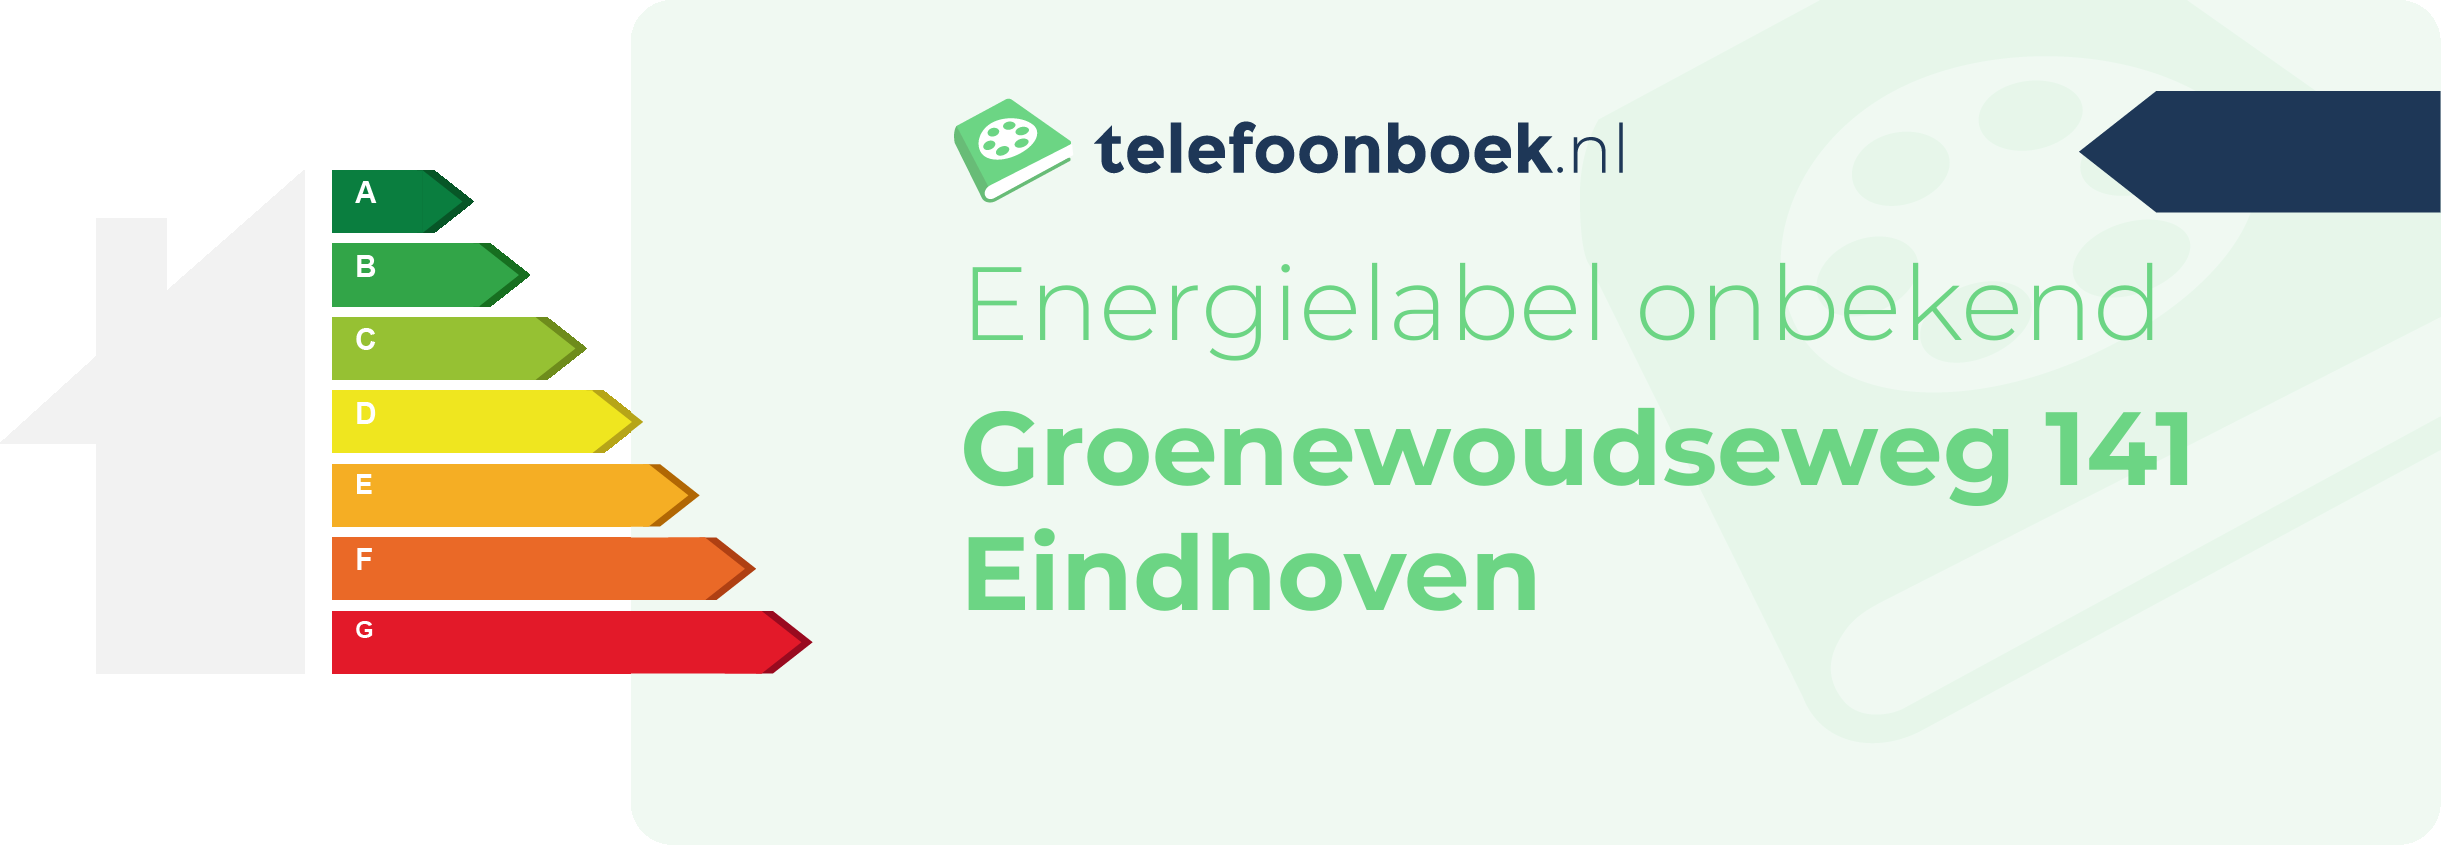 Energielabel Groenewoudseweg 141 Eindhoven